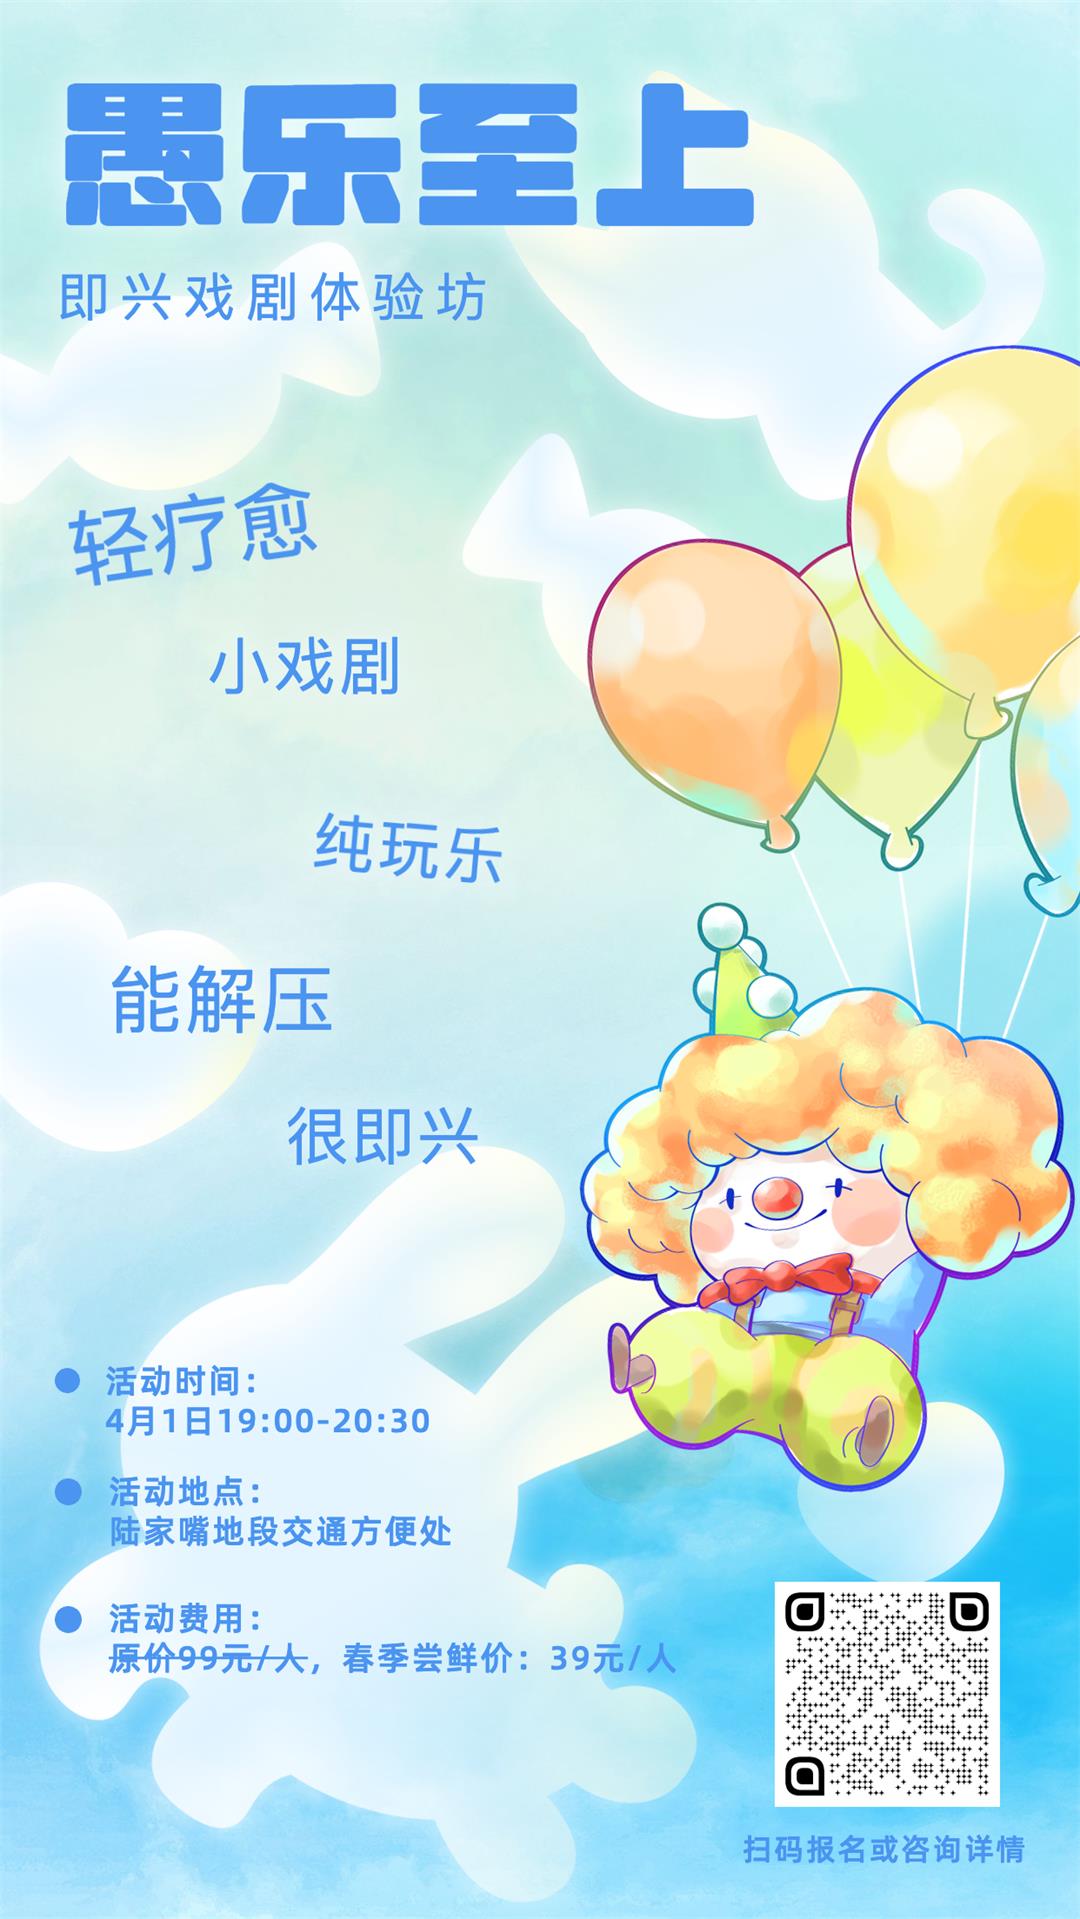 愚人节祝福小丑可爱手绘手机海报 (1).jpg